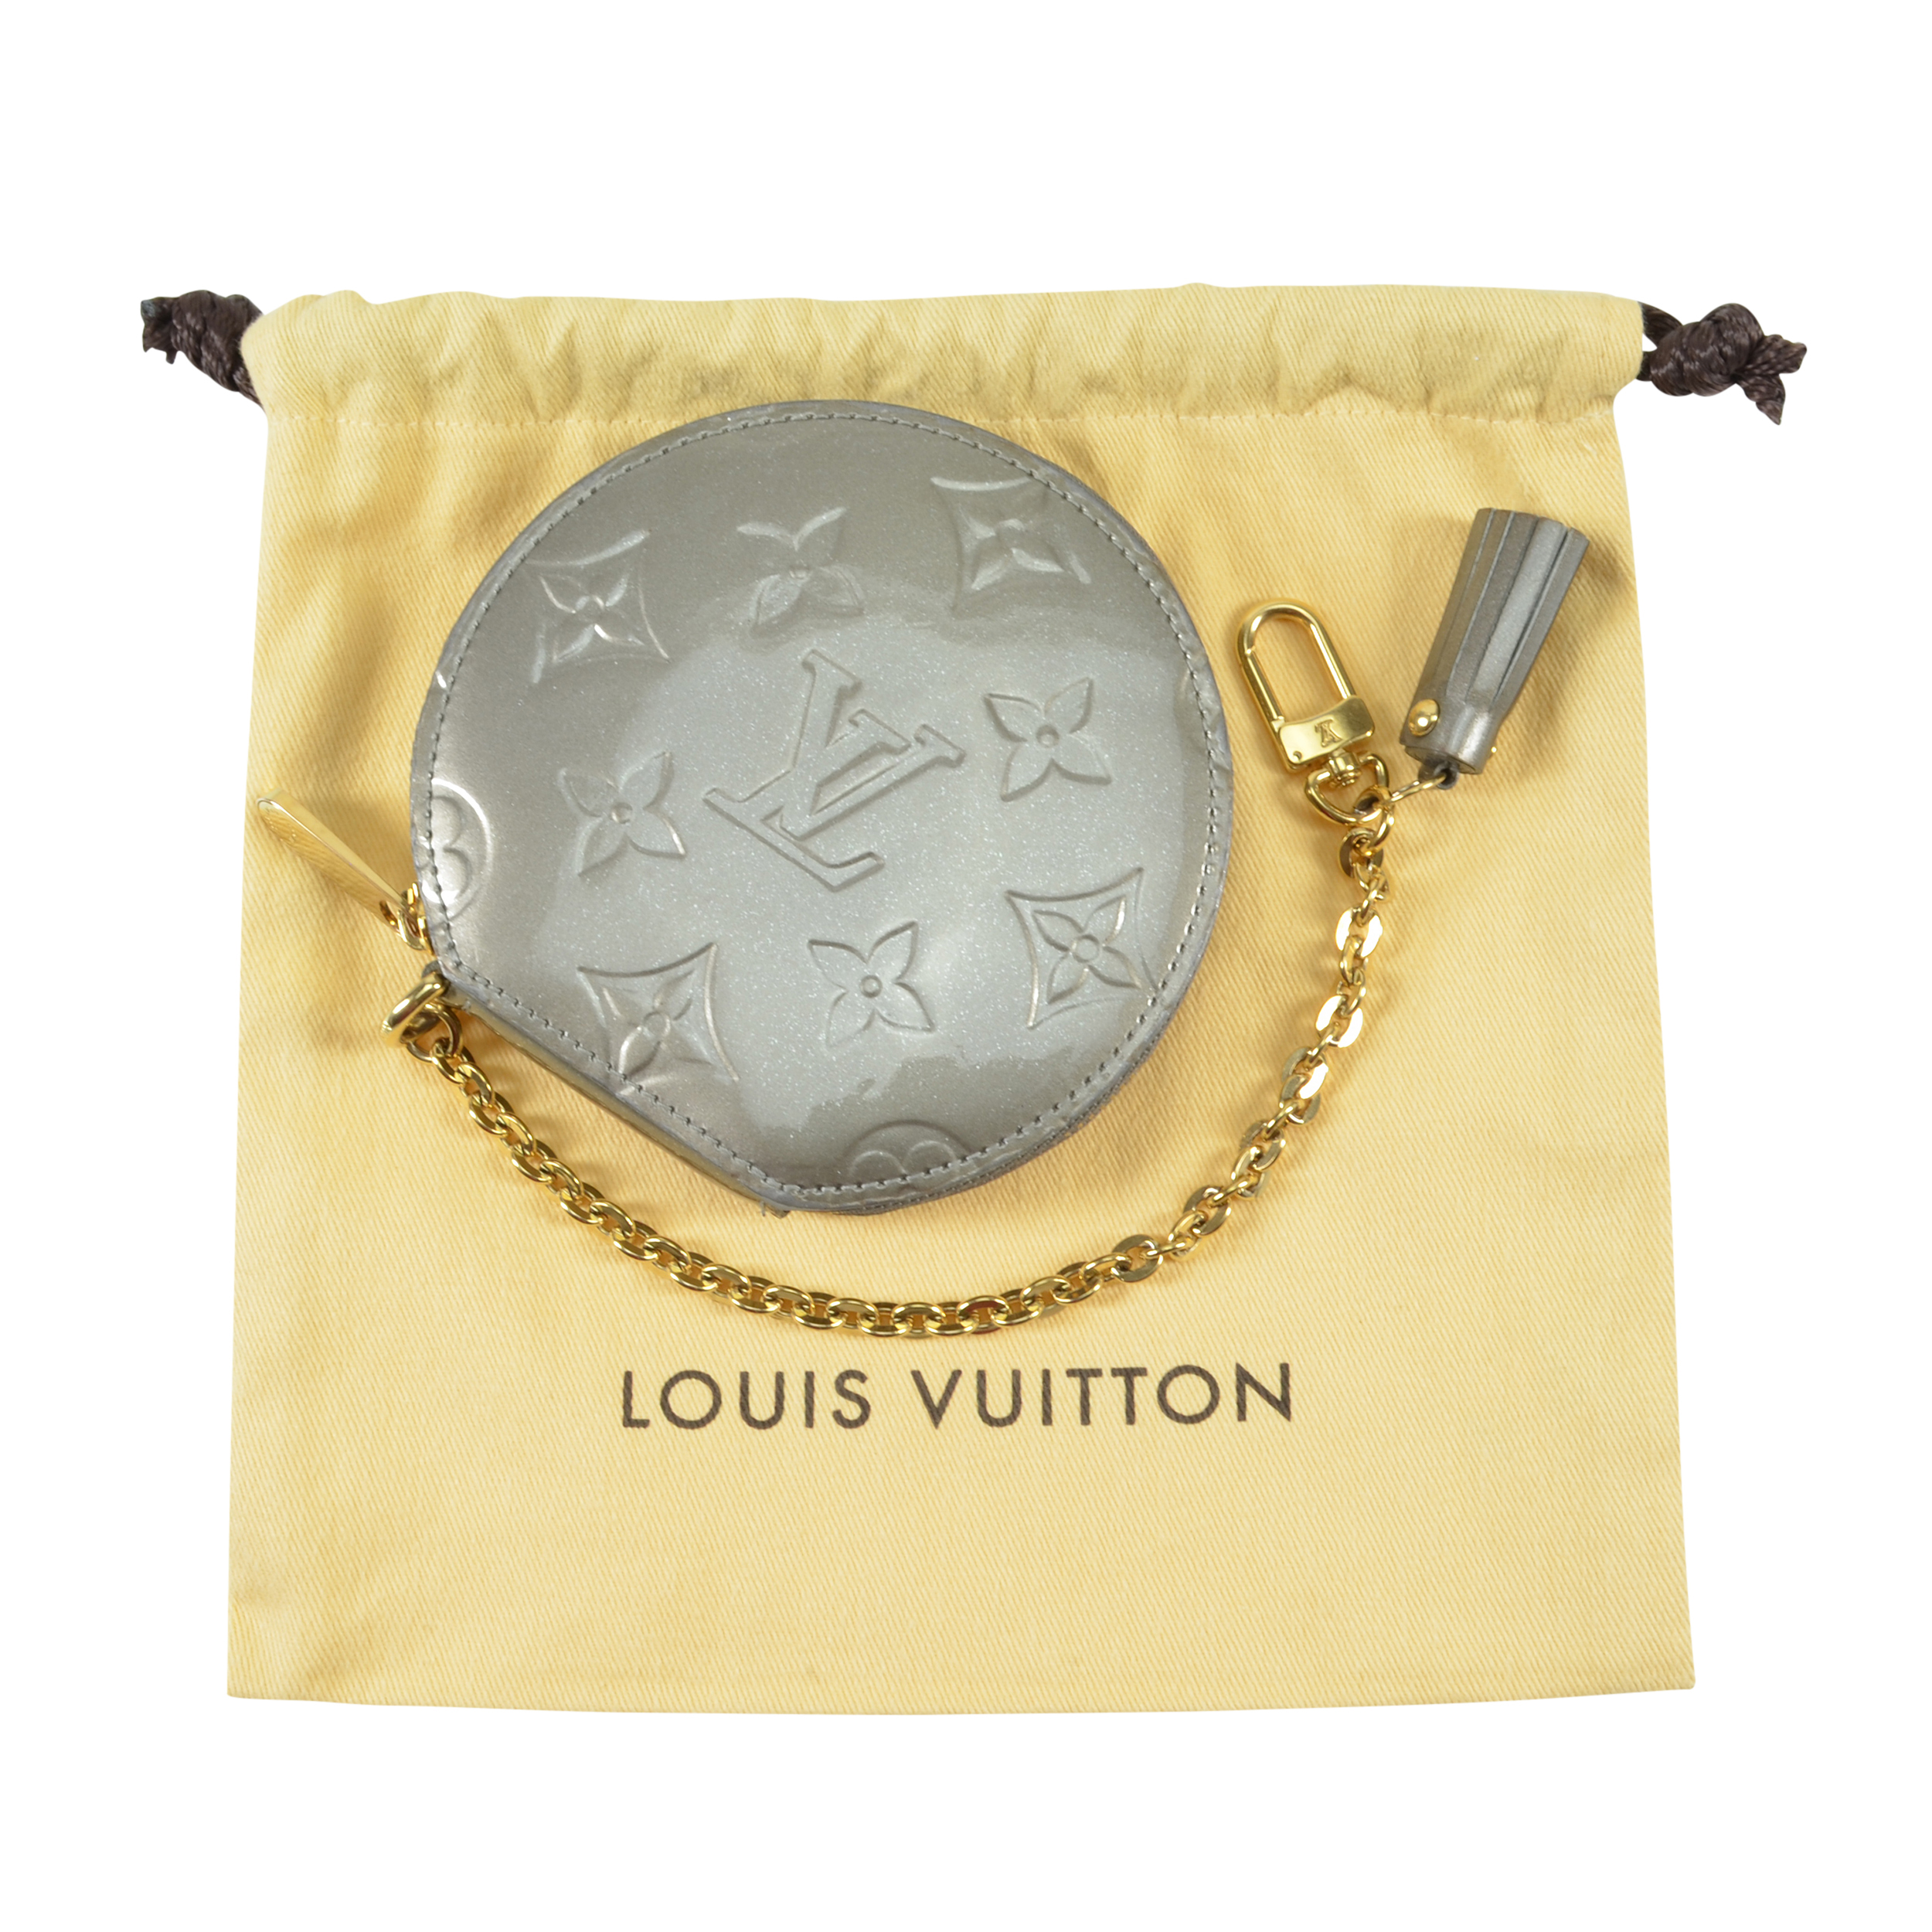 Louis Vuitton Geldbörsen günstig kaufen, Second Hand